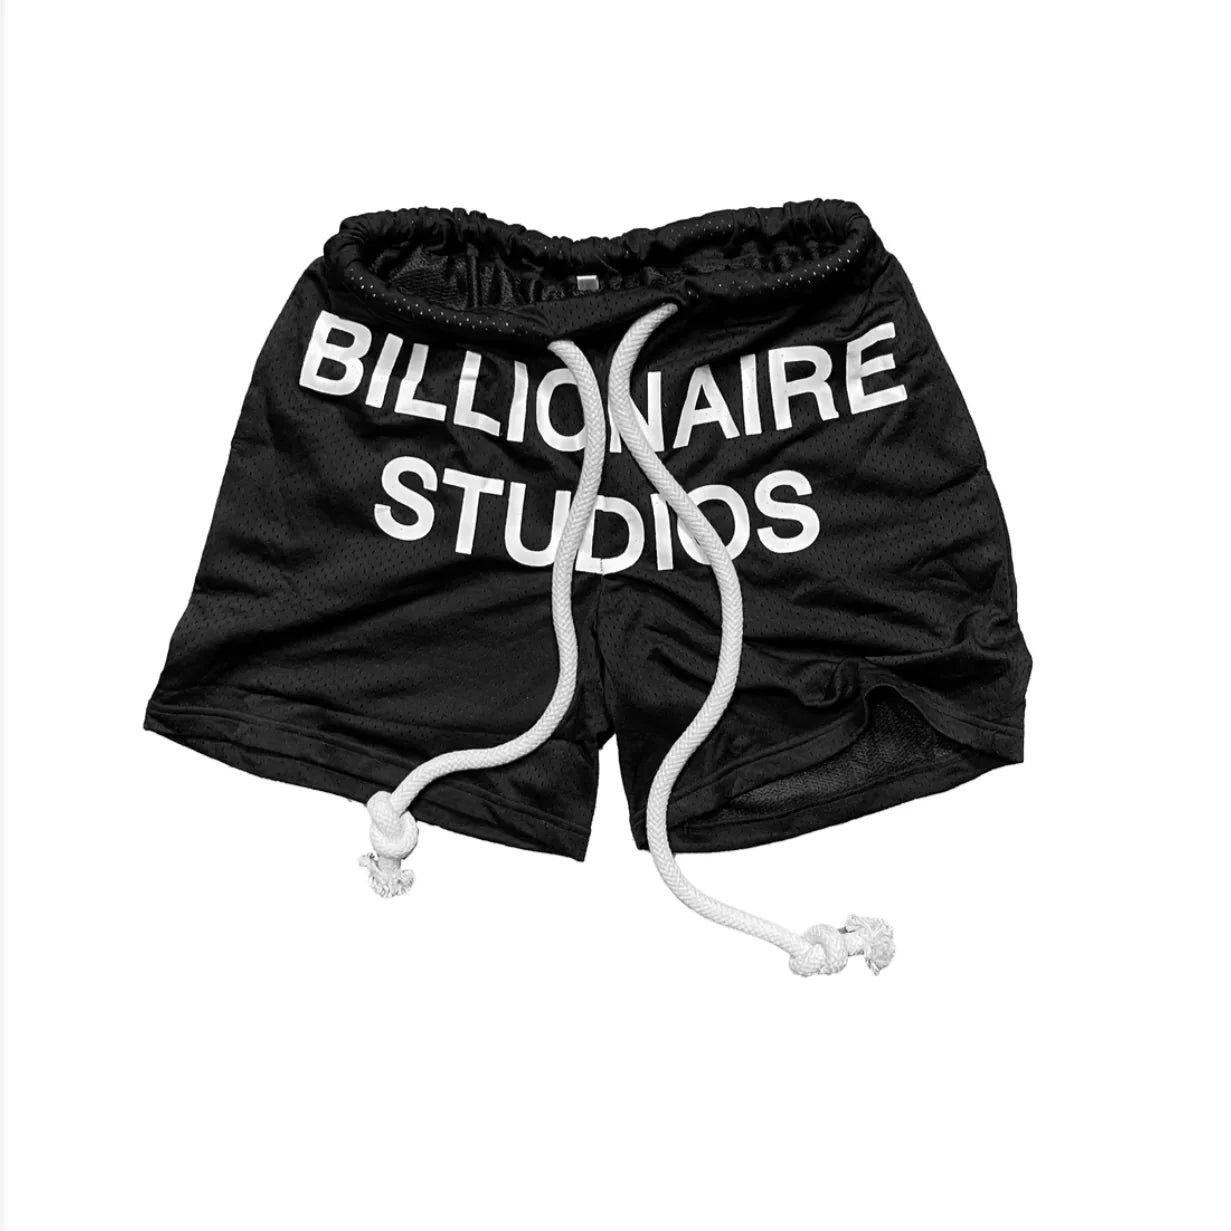 Billionaire Studios Bill Net Shorts Black